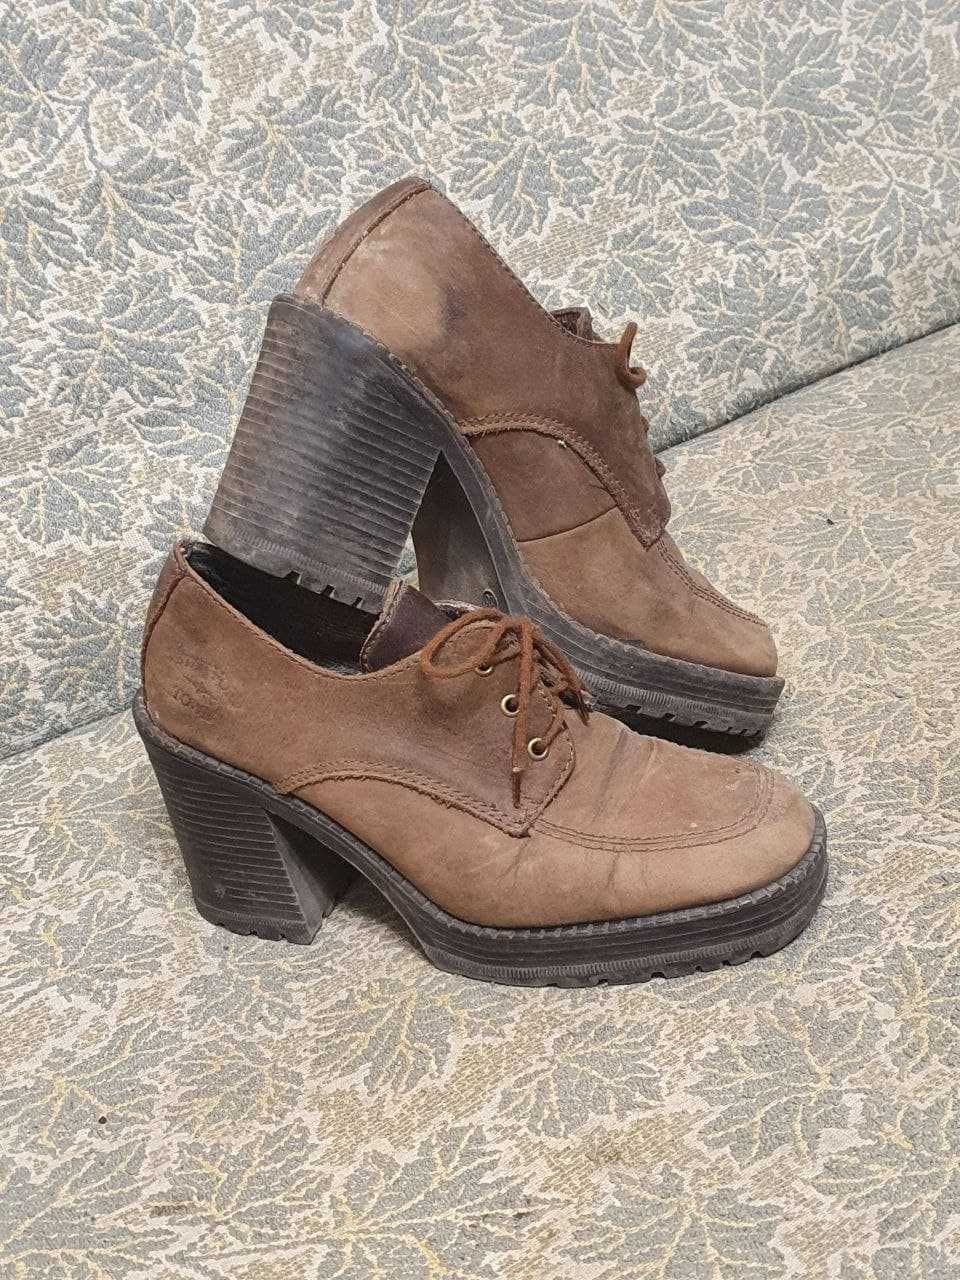 Замшевые туфли Echtes Leder на устойчивом каблуке, оригинал!